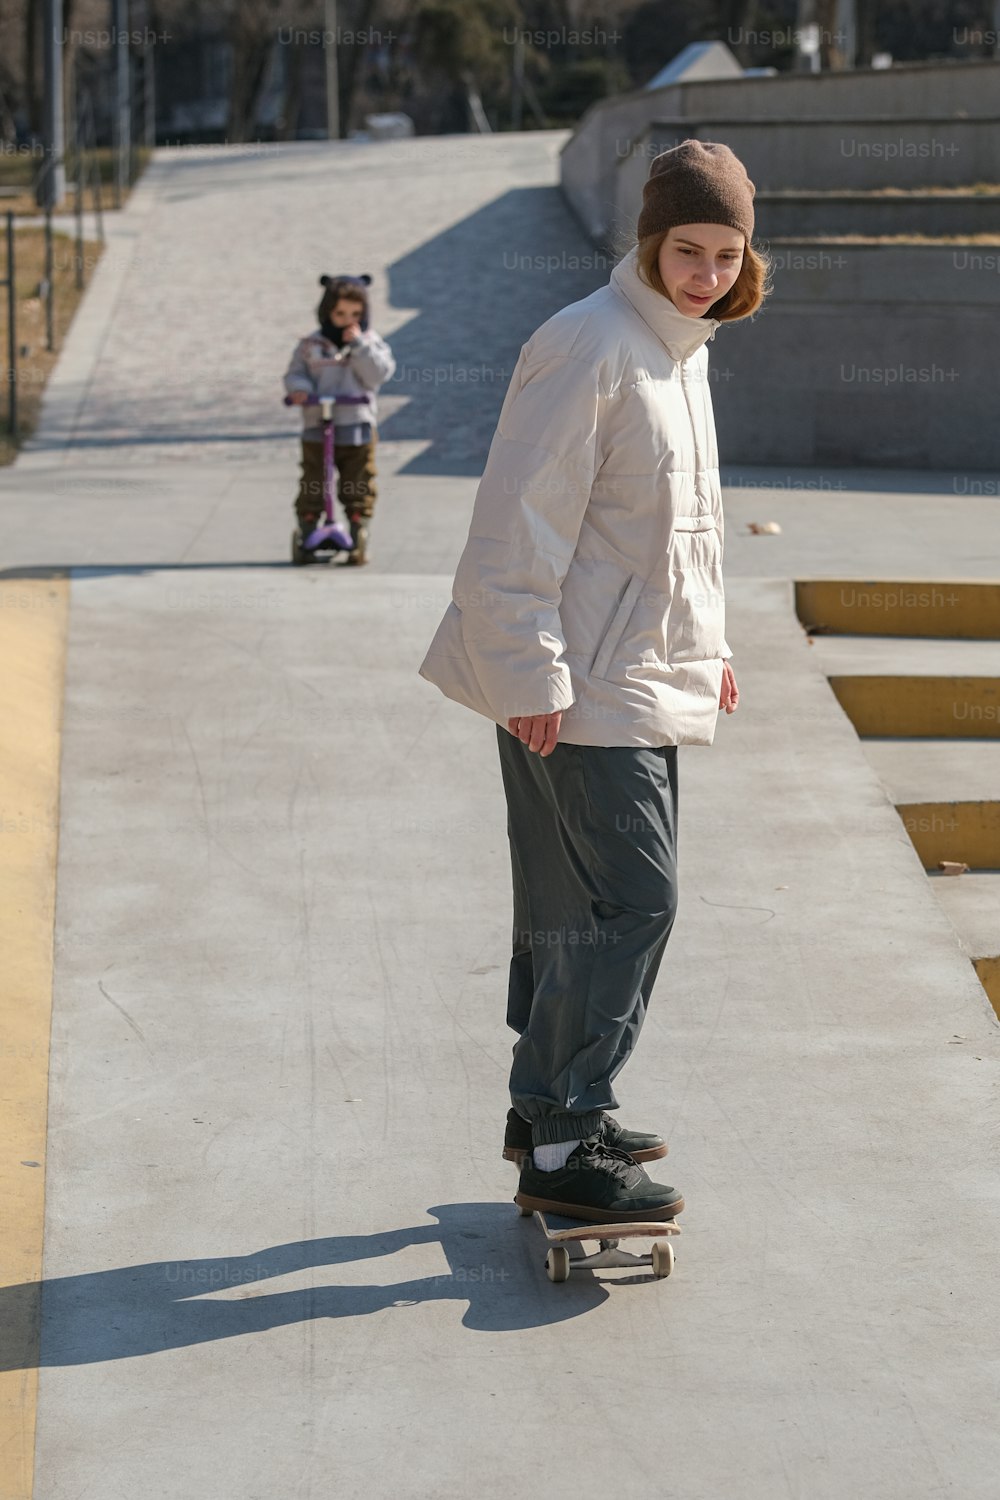 Un jeune homme sur une planche à roulettes sur un trottoir